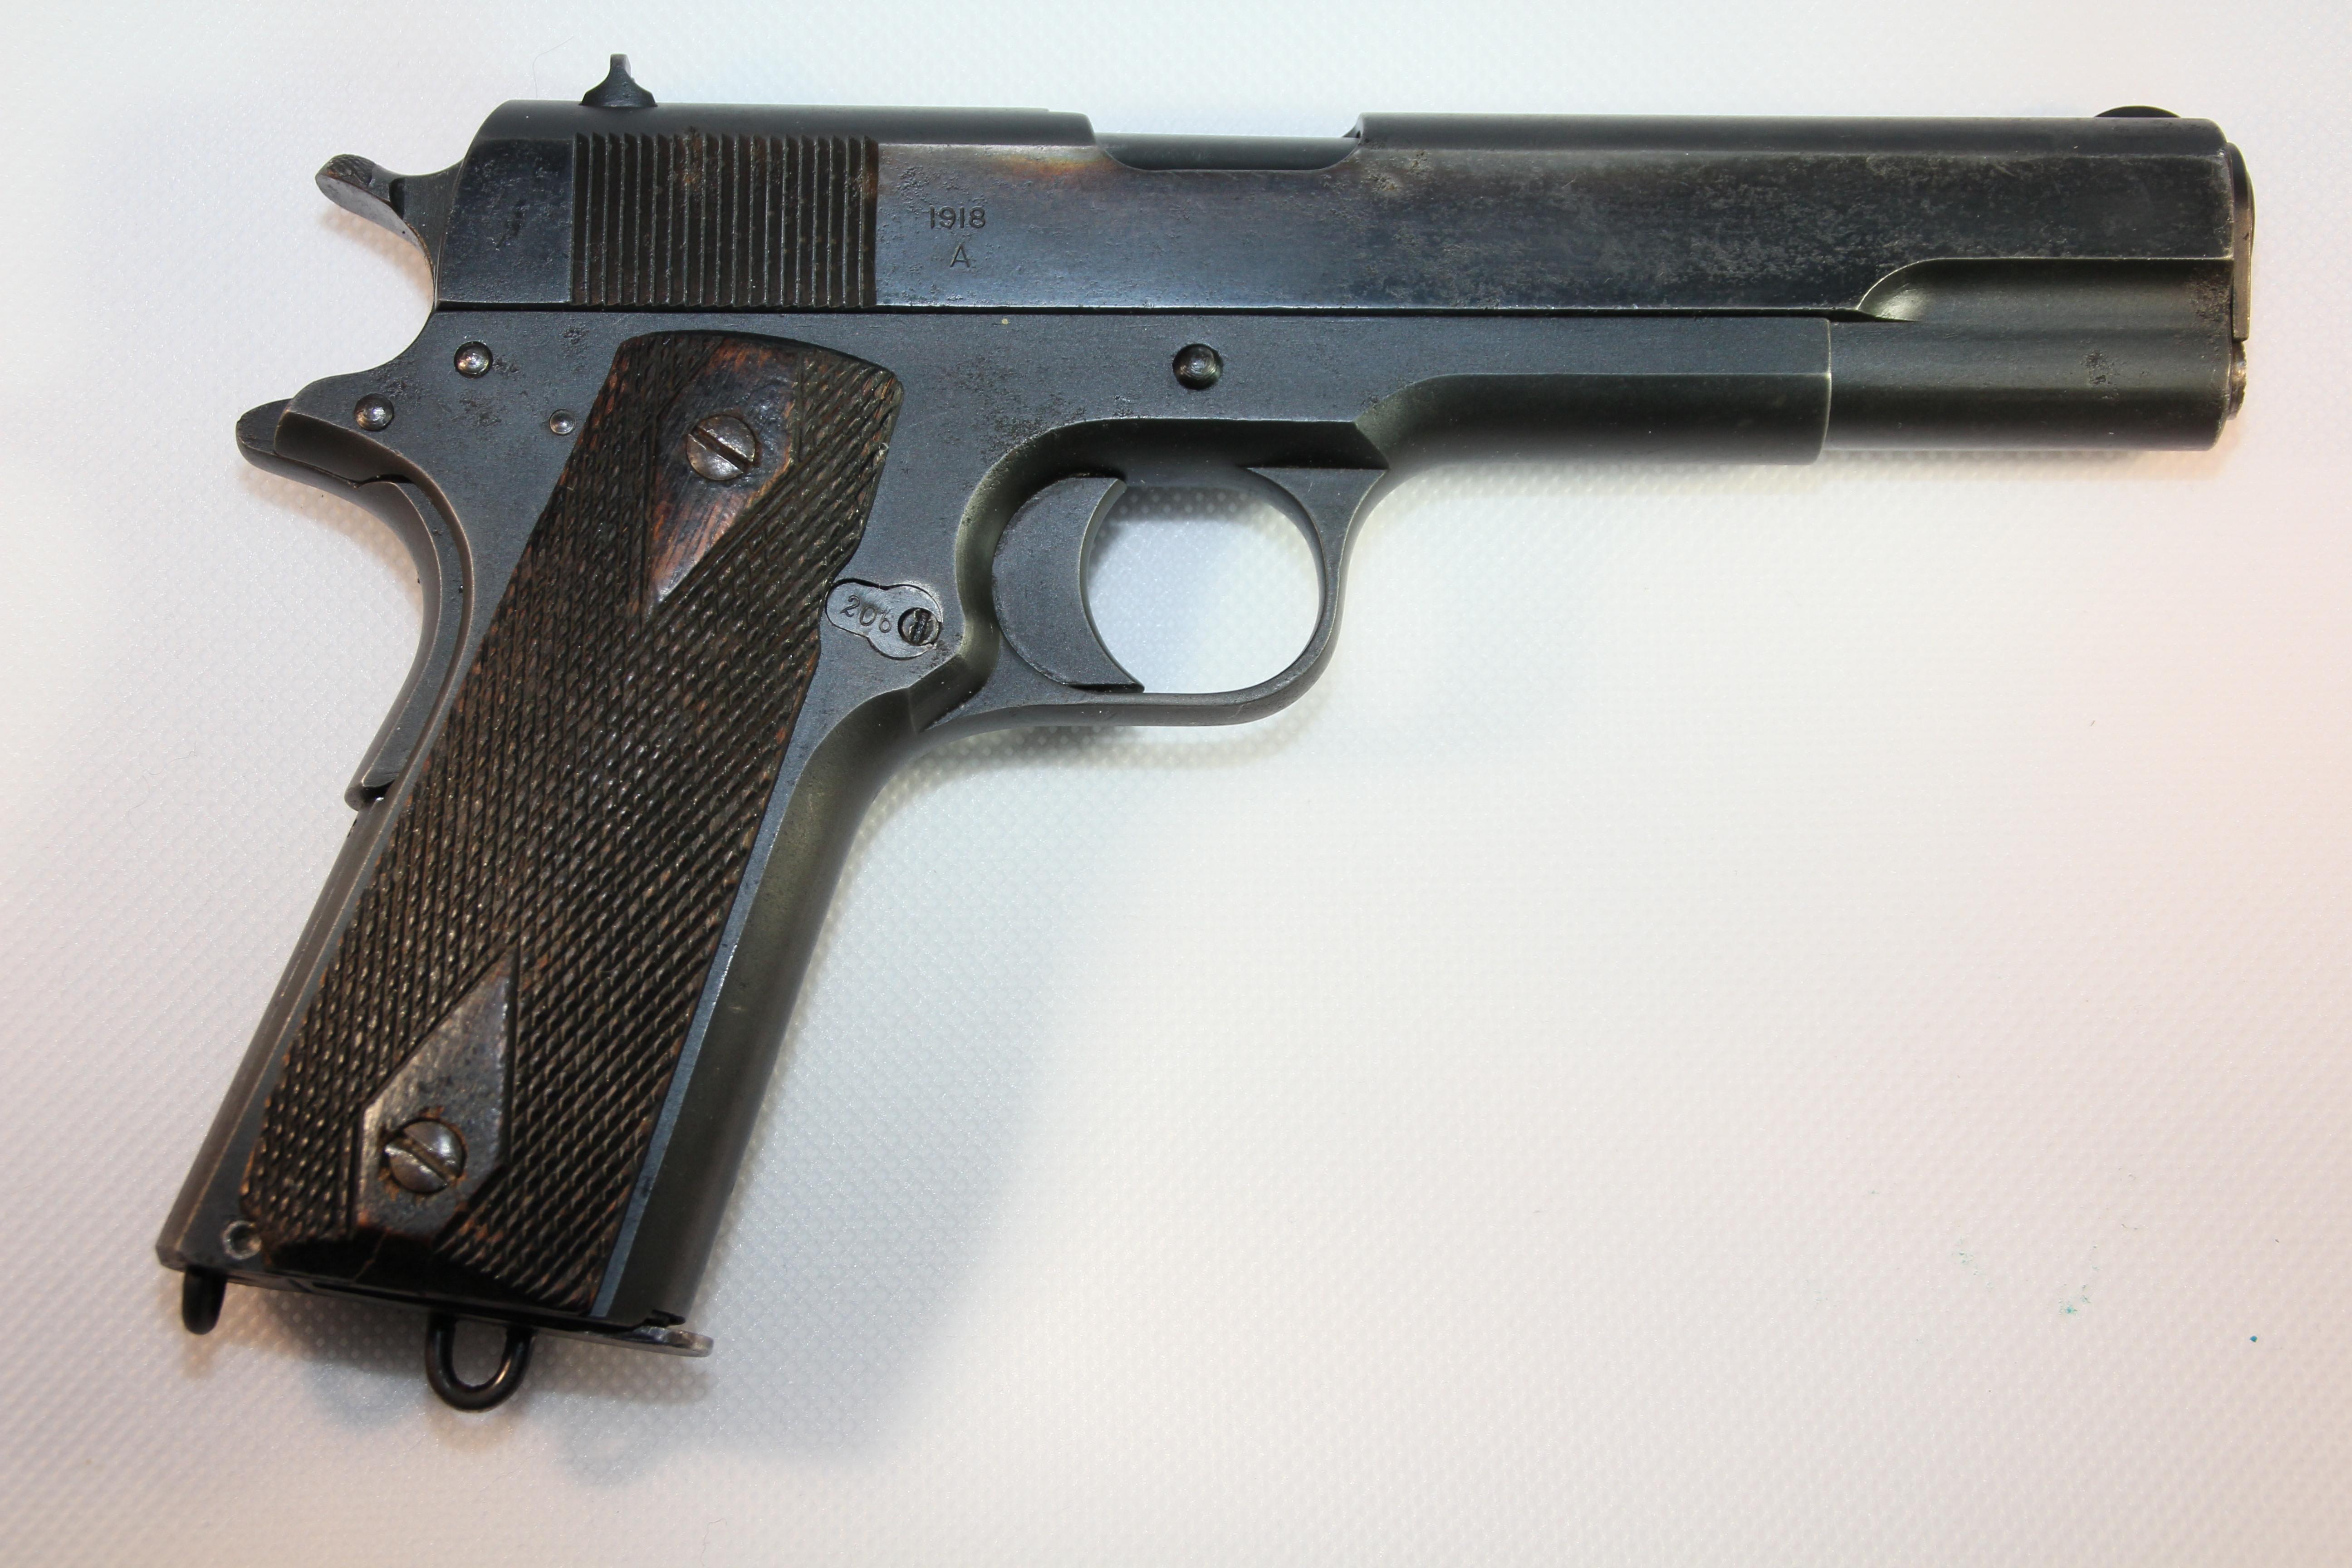 ./guns/pistol/bilder/Pistol-Kongsberg-M1914-1918-2.JPG